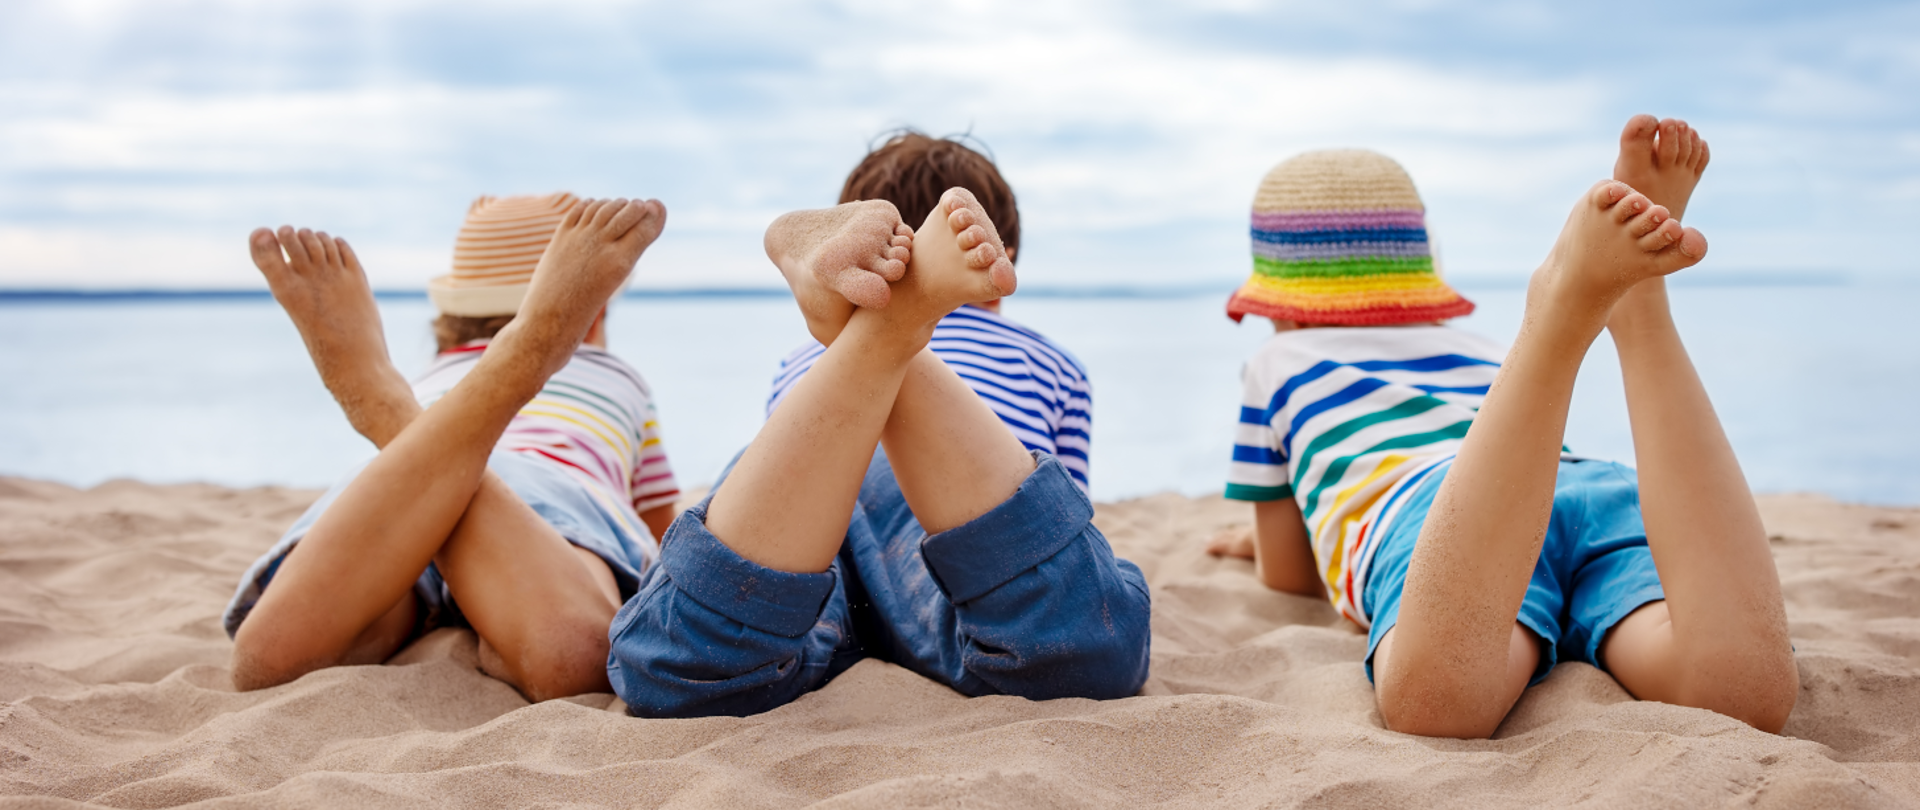 Zdjęcie przedstawia troje dzieci leżących na plaży z założonymi nogami.